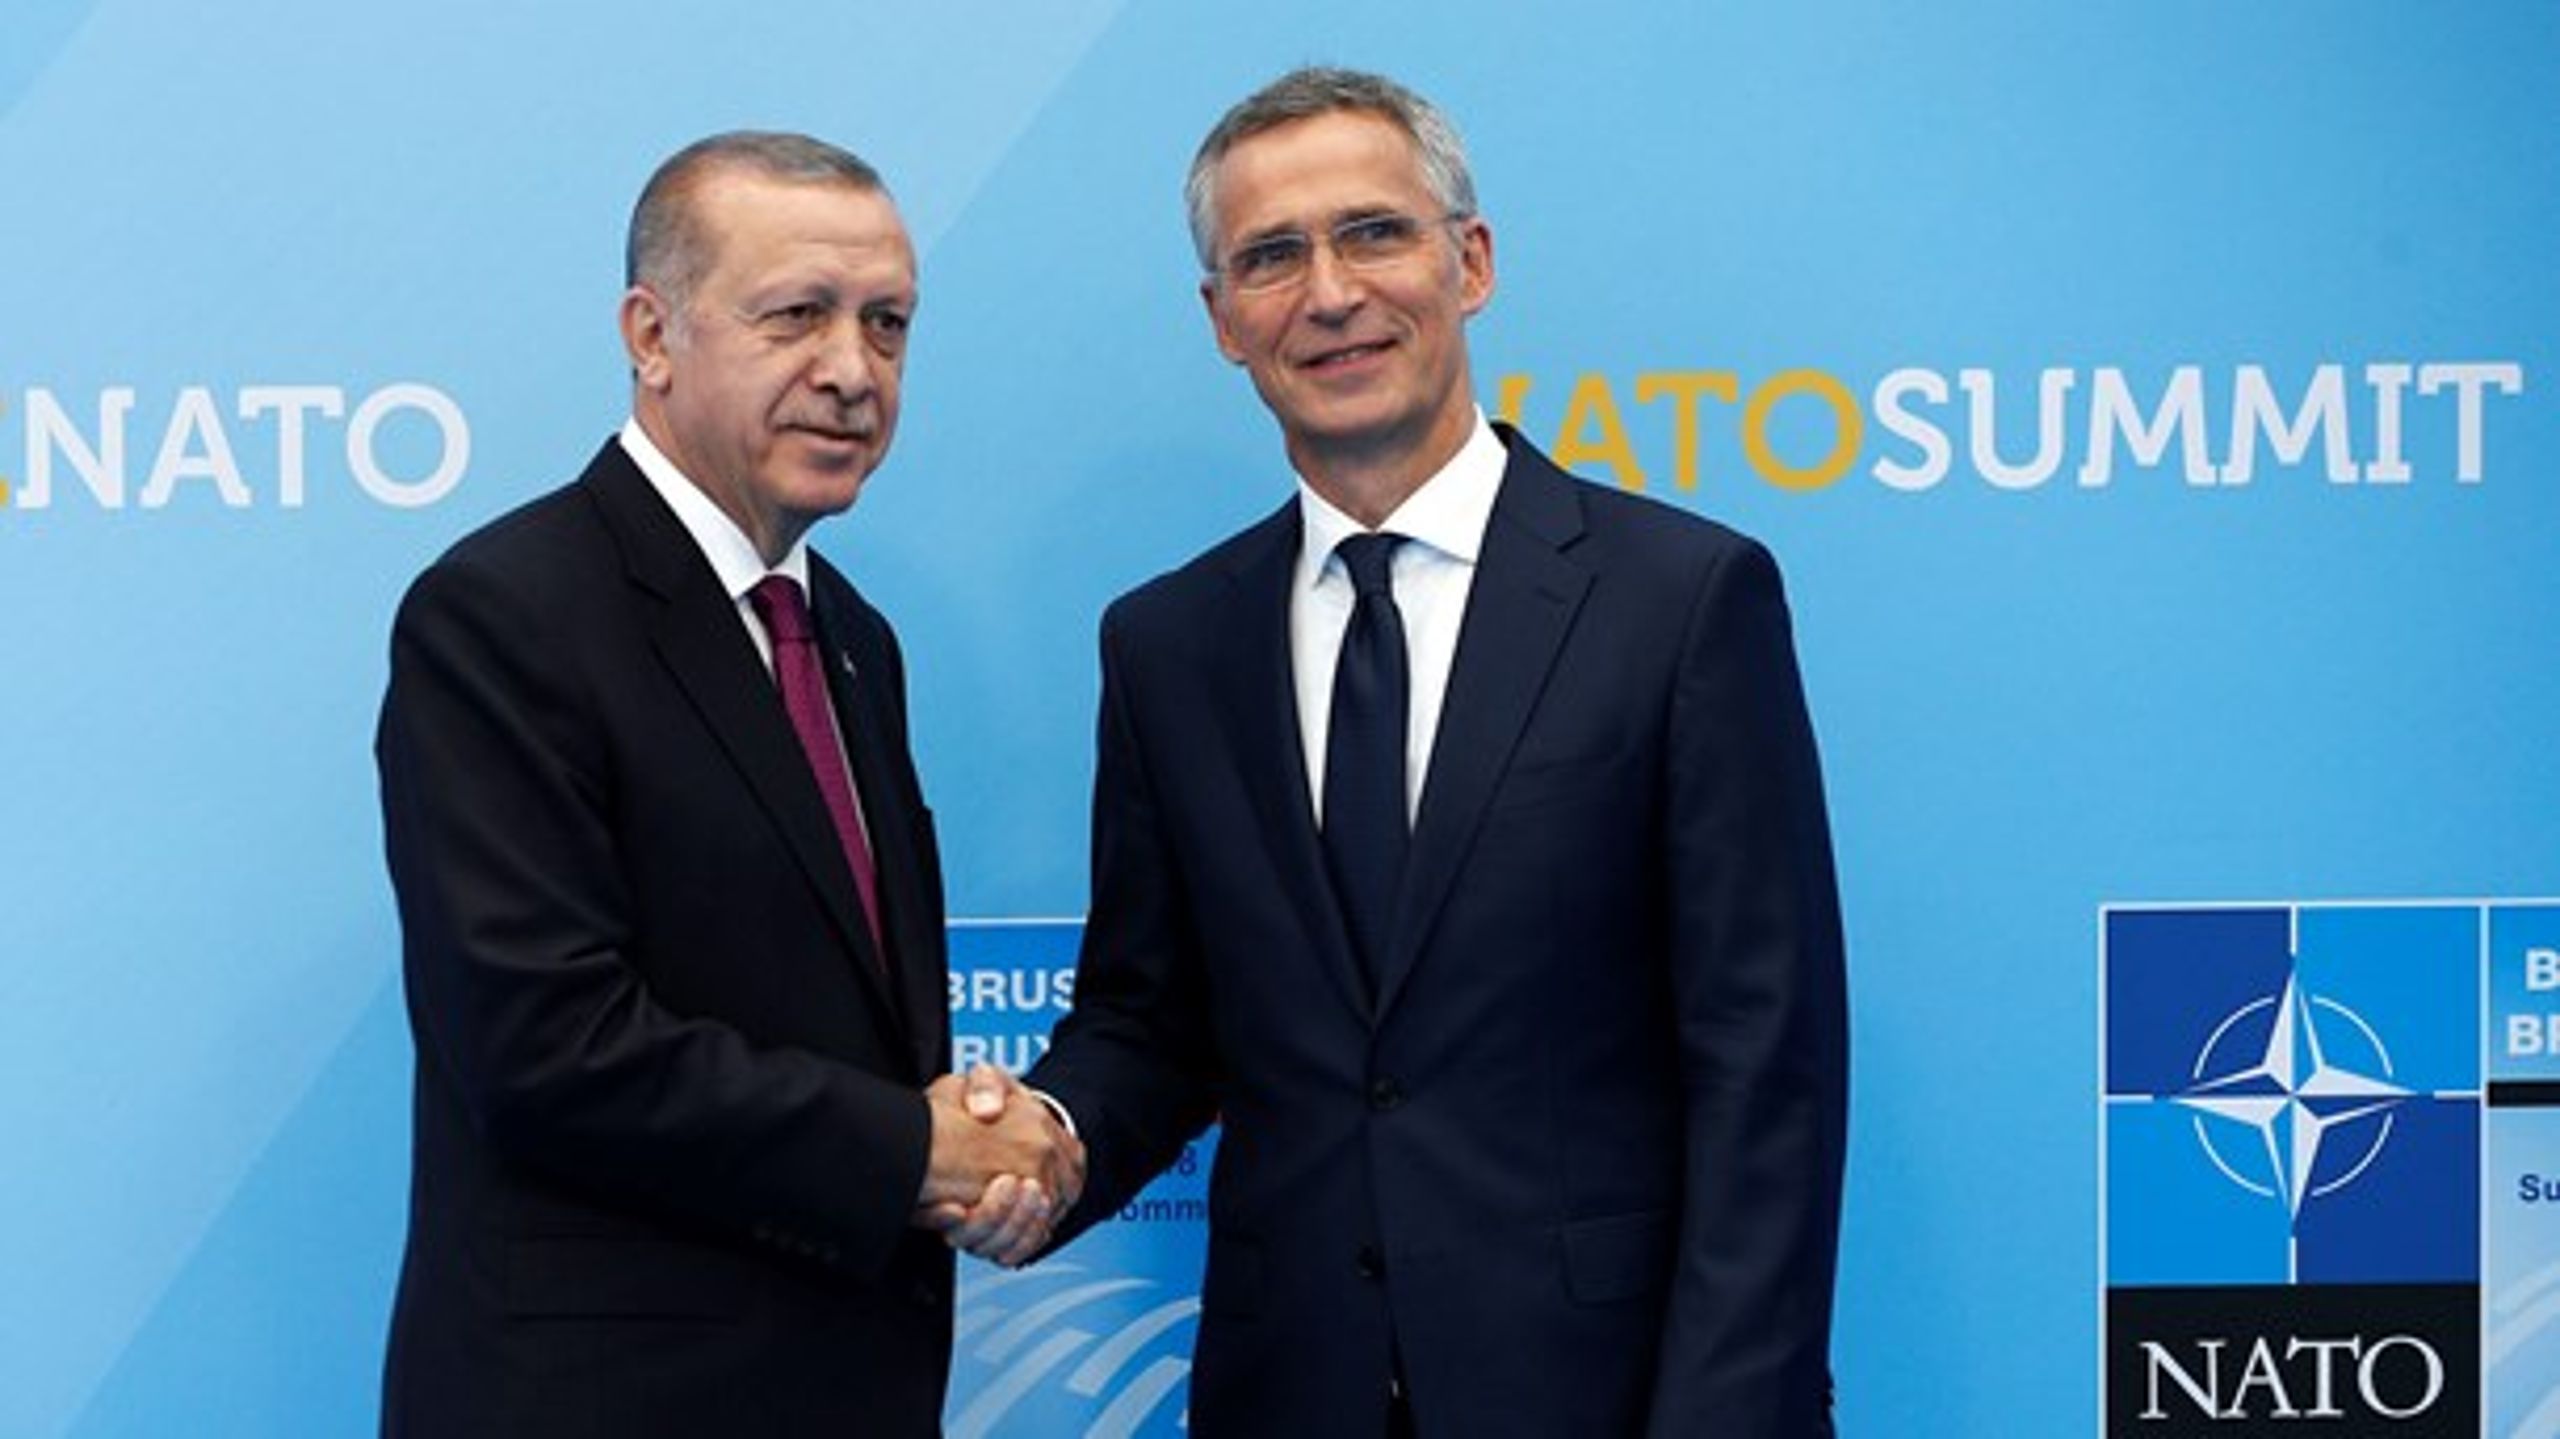 Tyrkiets præsident, Recep Erdogan, og Natos generalsekretær, Jens Stoltenberg, ved Natos topmøde i juli.&nbsp;